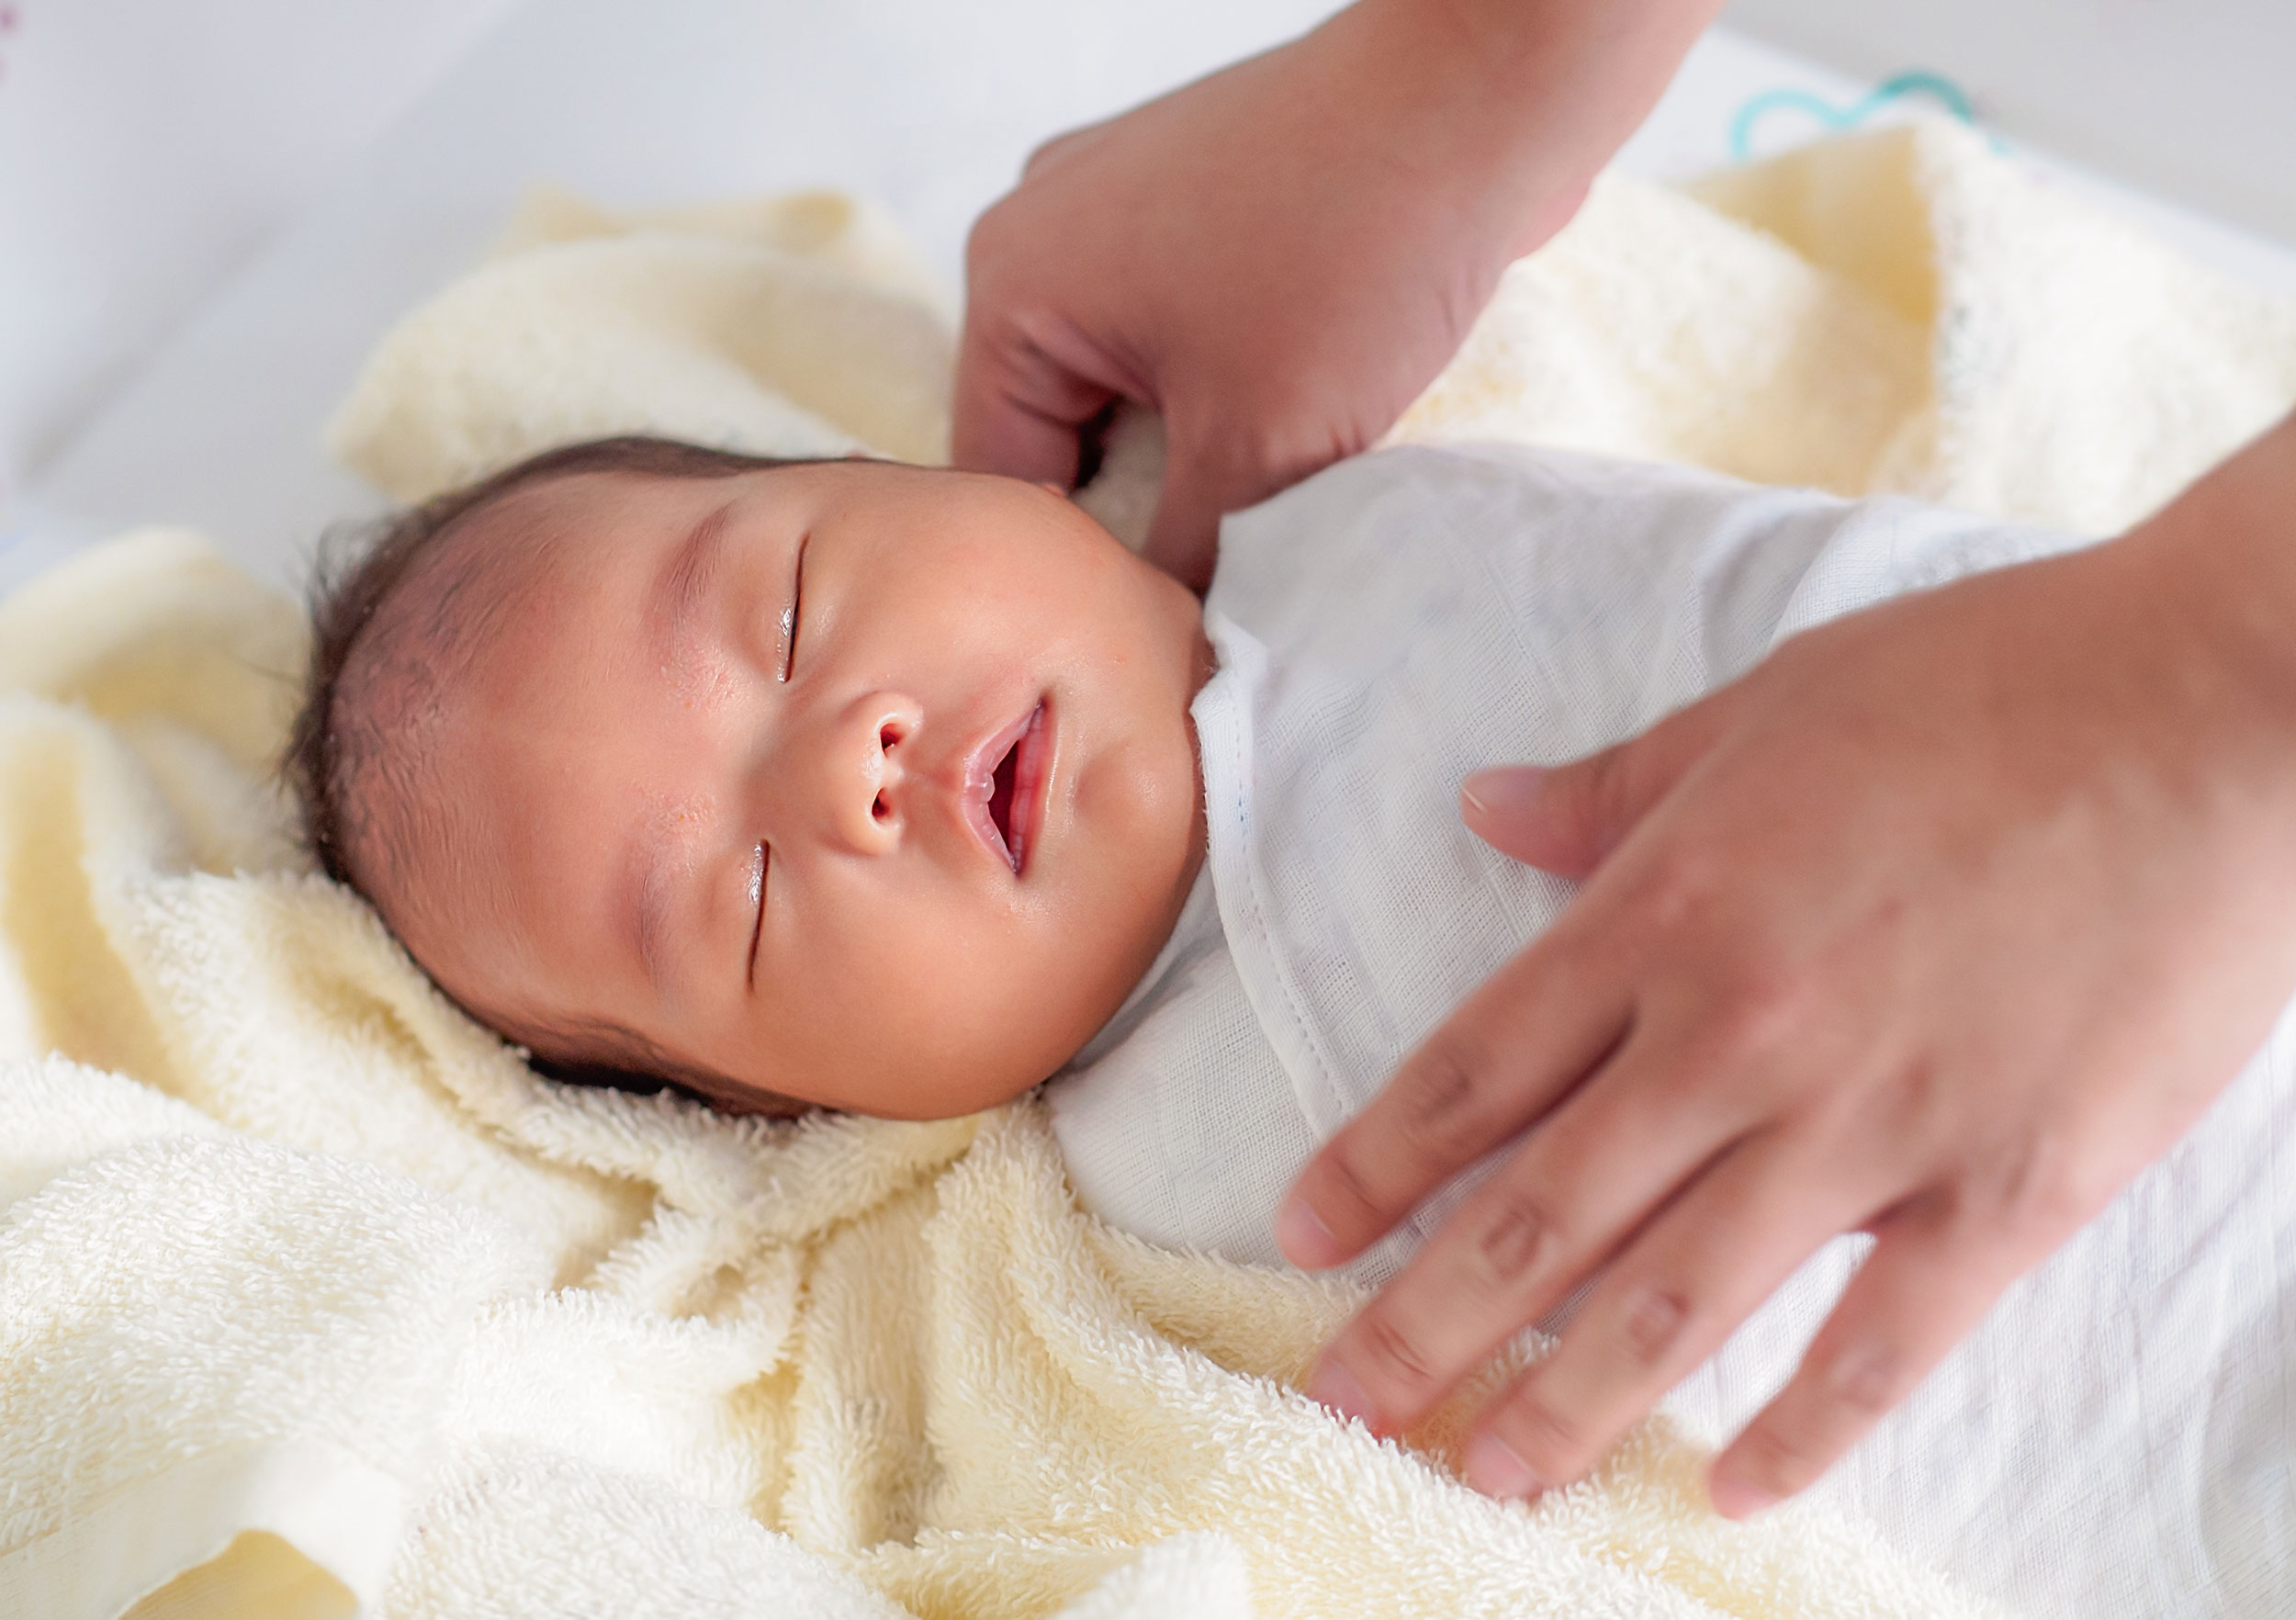 Membedong bisa membantu menenangkan bayi yang rewel di malam hari.